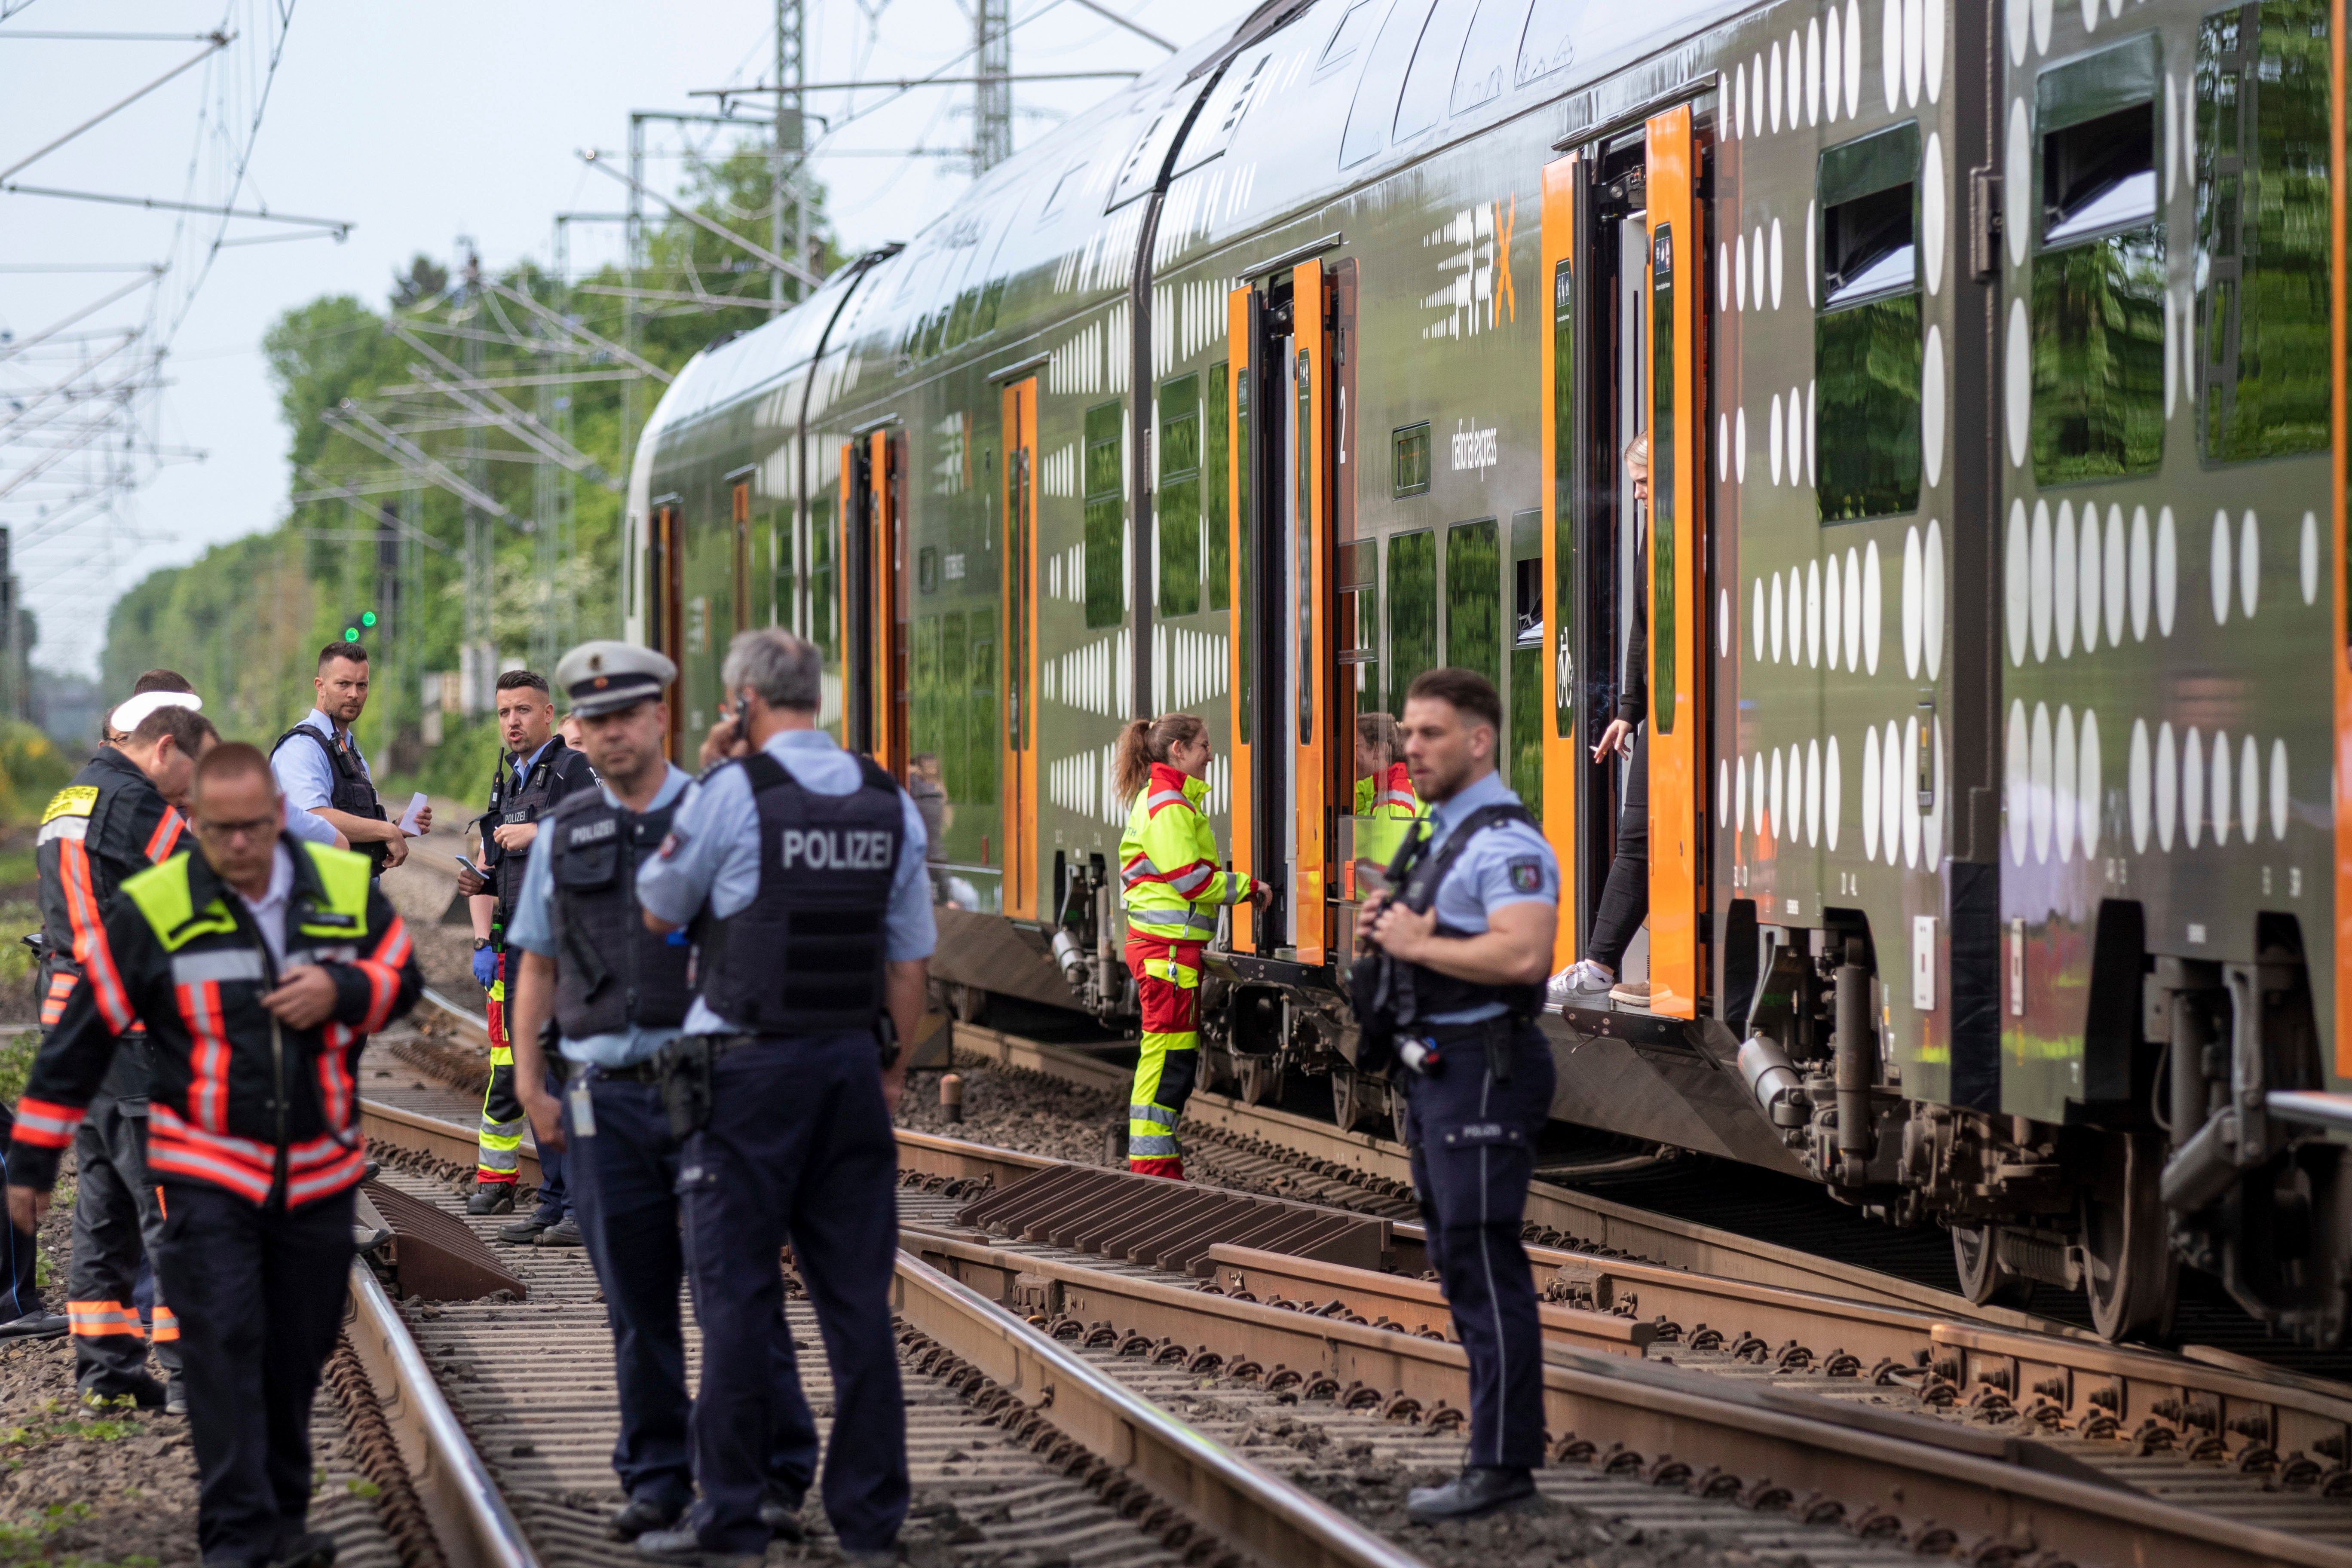 Oficiales de policía parados frente al tren regional en Herzogenrath